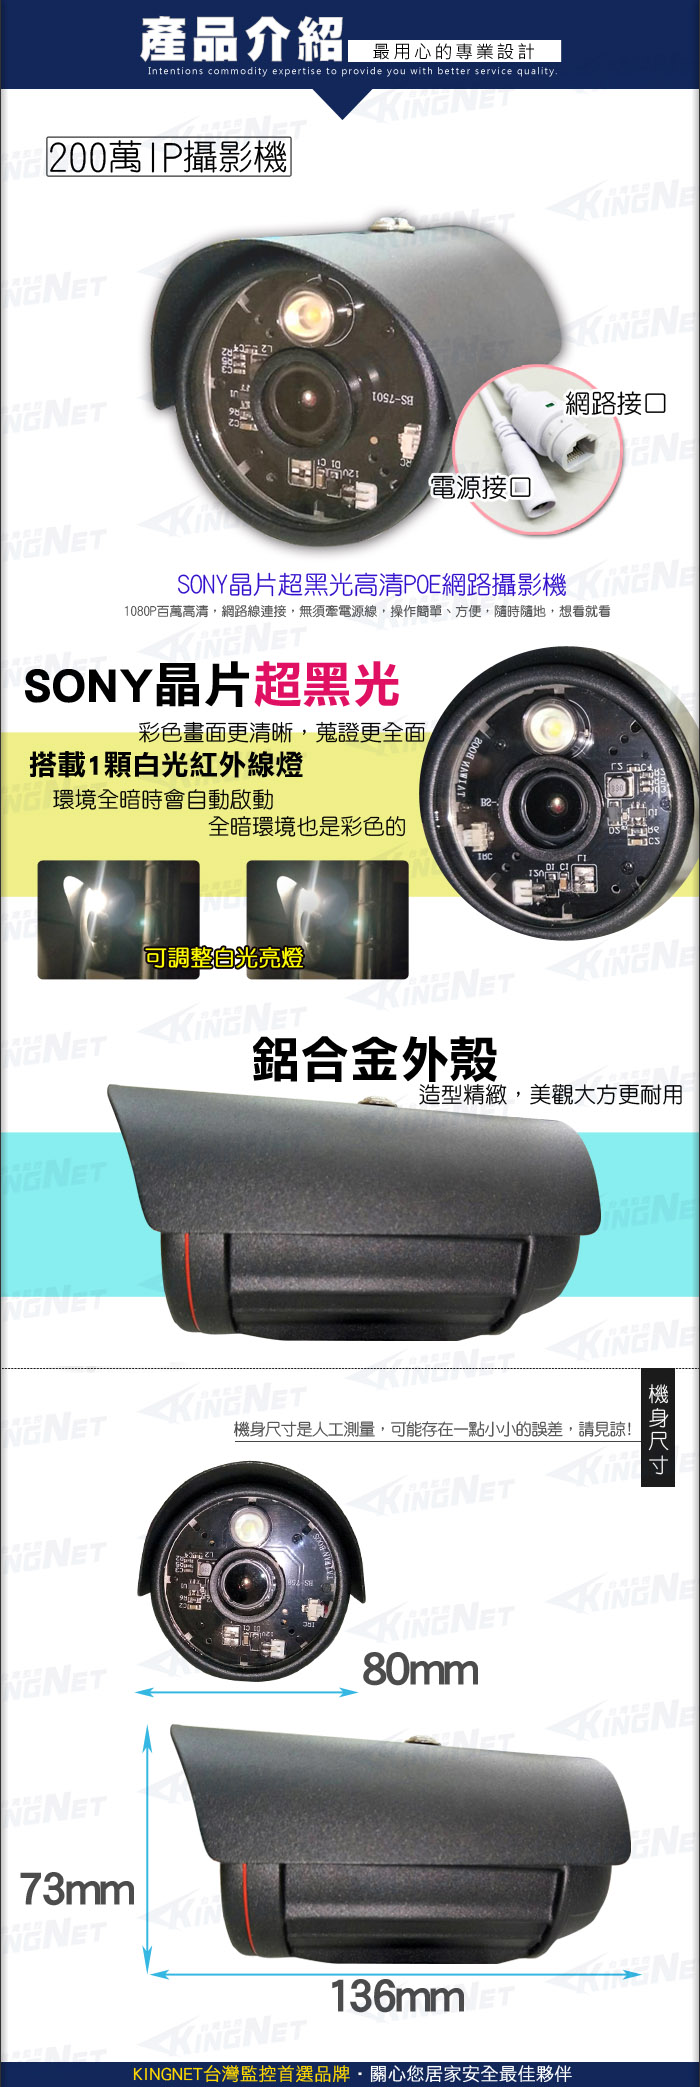 監視器攝影機 KINGNET 超星光黑光 網路攝影機 IPCAM 防水槍型鏡頭 夜間高清全彩 H.265 支援POE供電